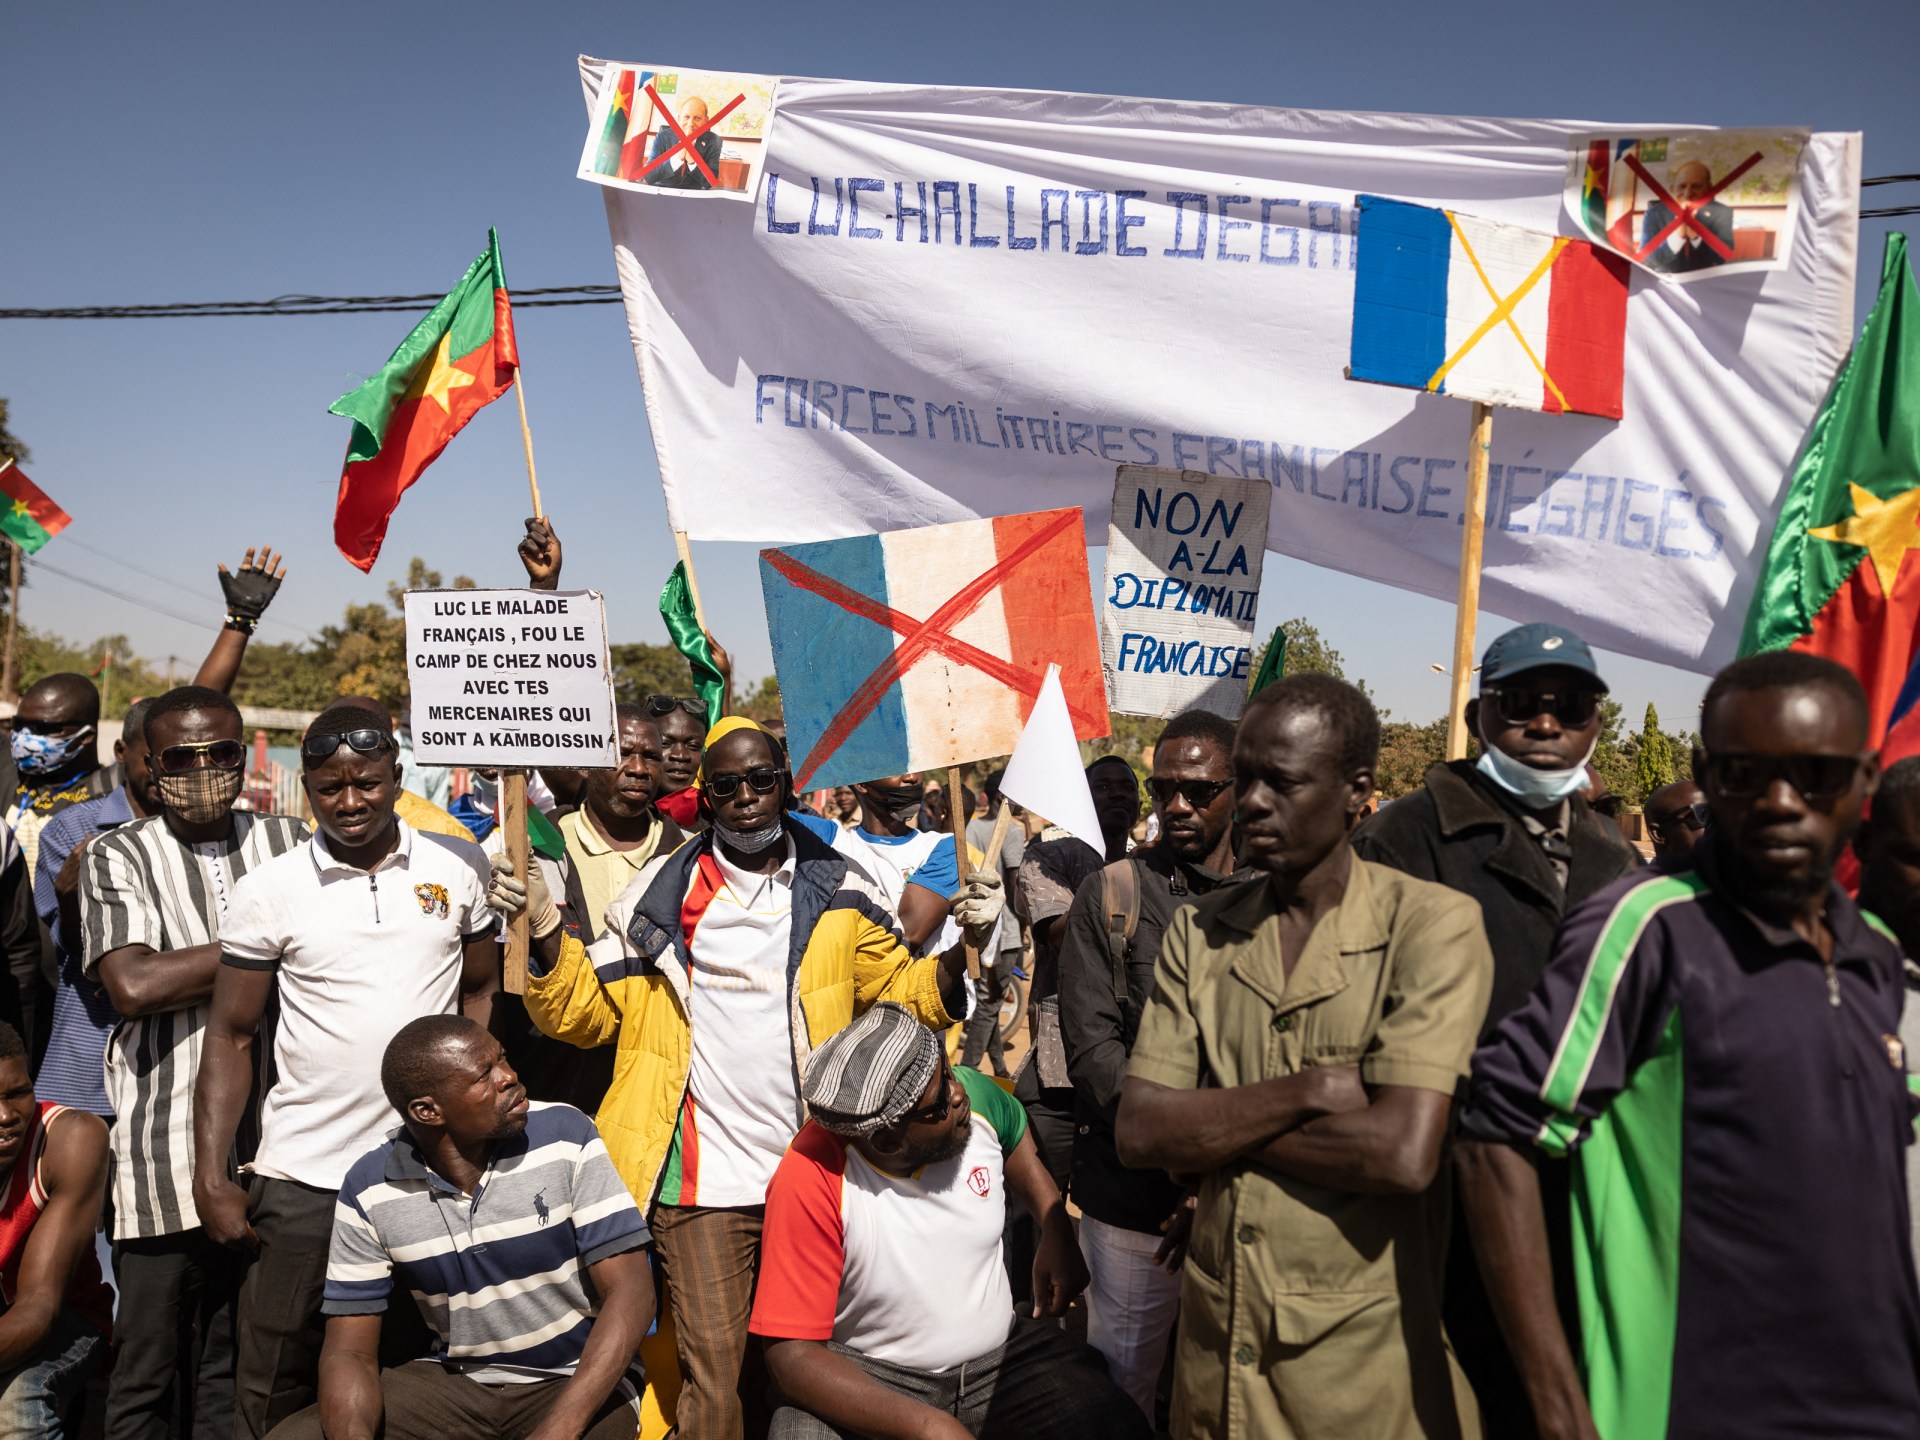 Raport: Burkina Faso żąda wycofania wojsk francuskich |  Wiadomości polityczne